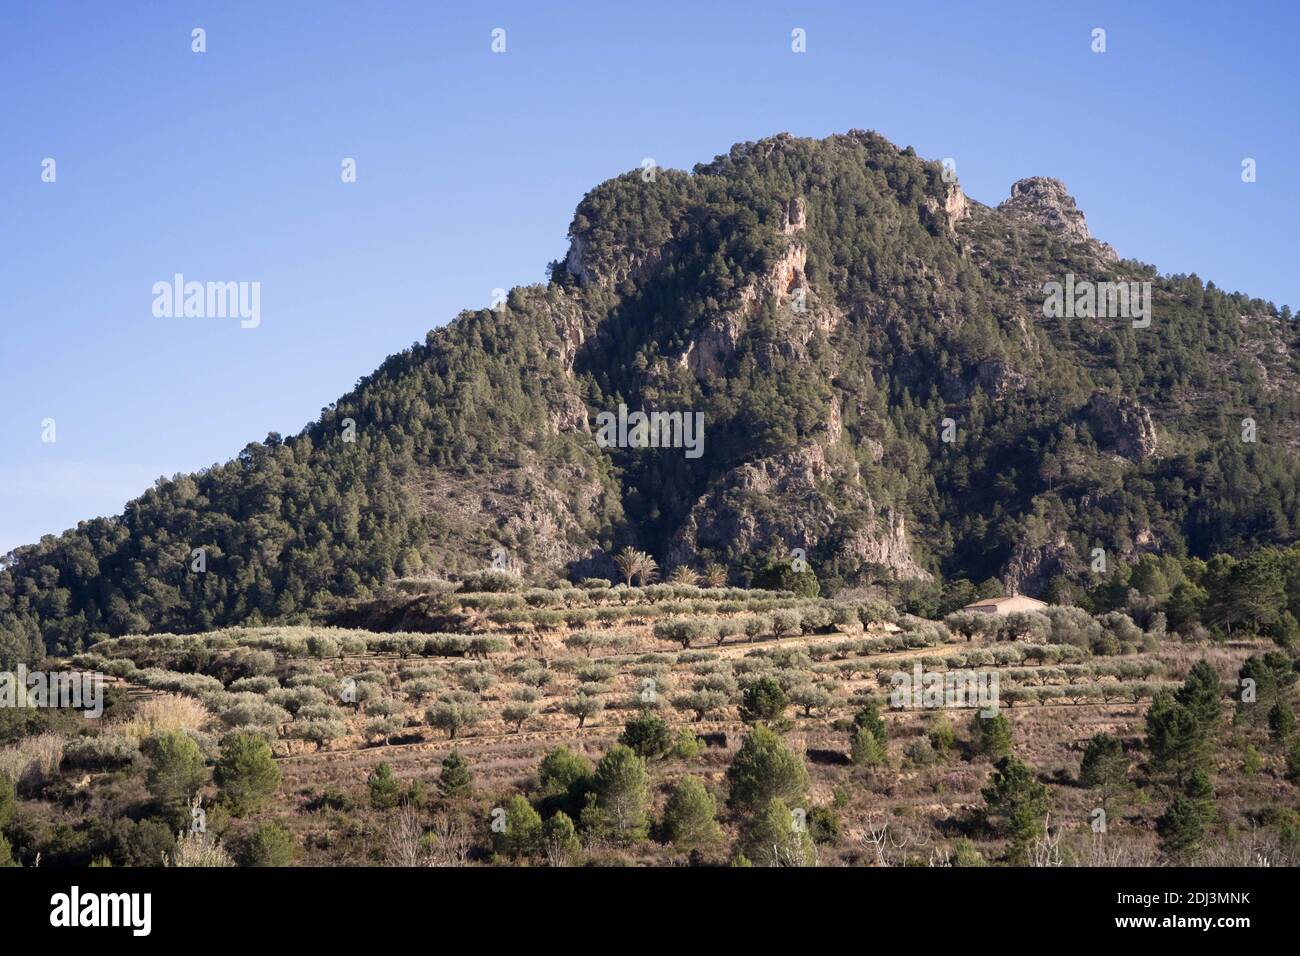 Ein Olivengarten am Fuße eines Berges Stockfoto